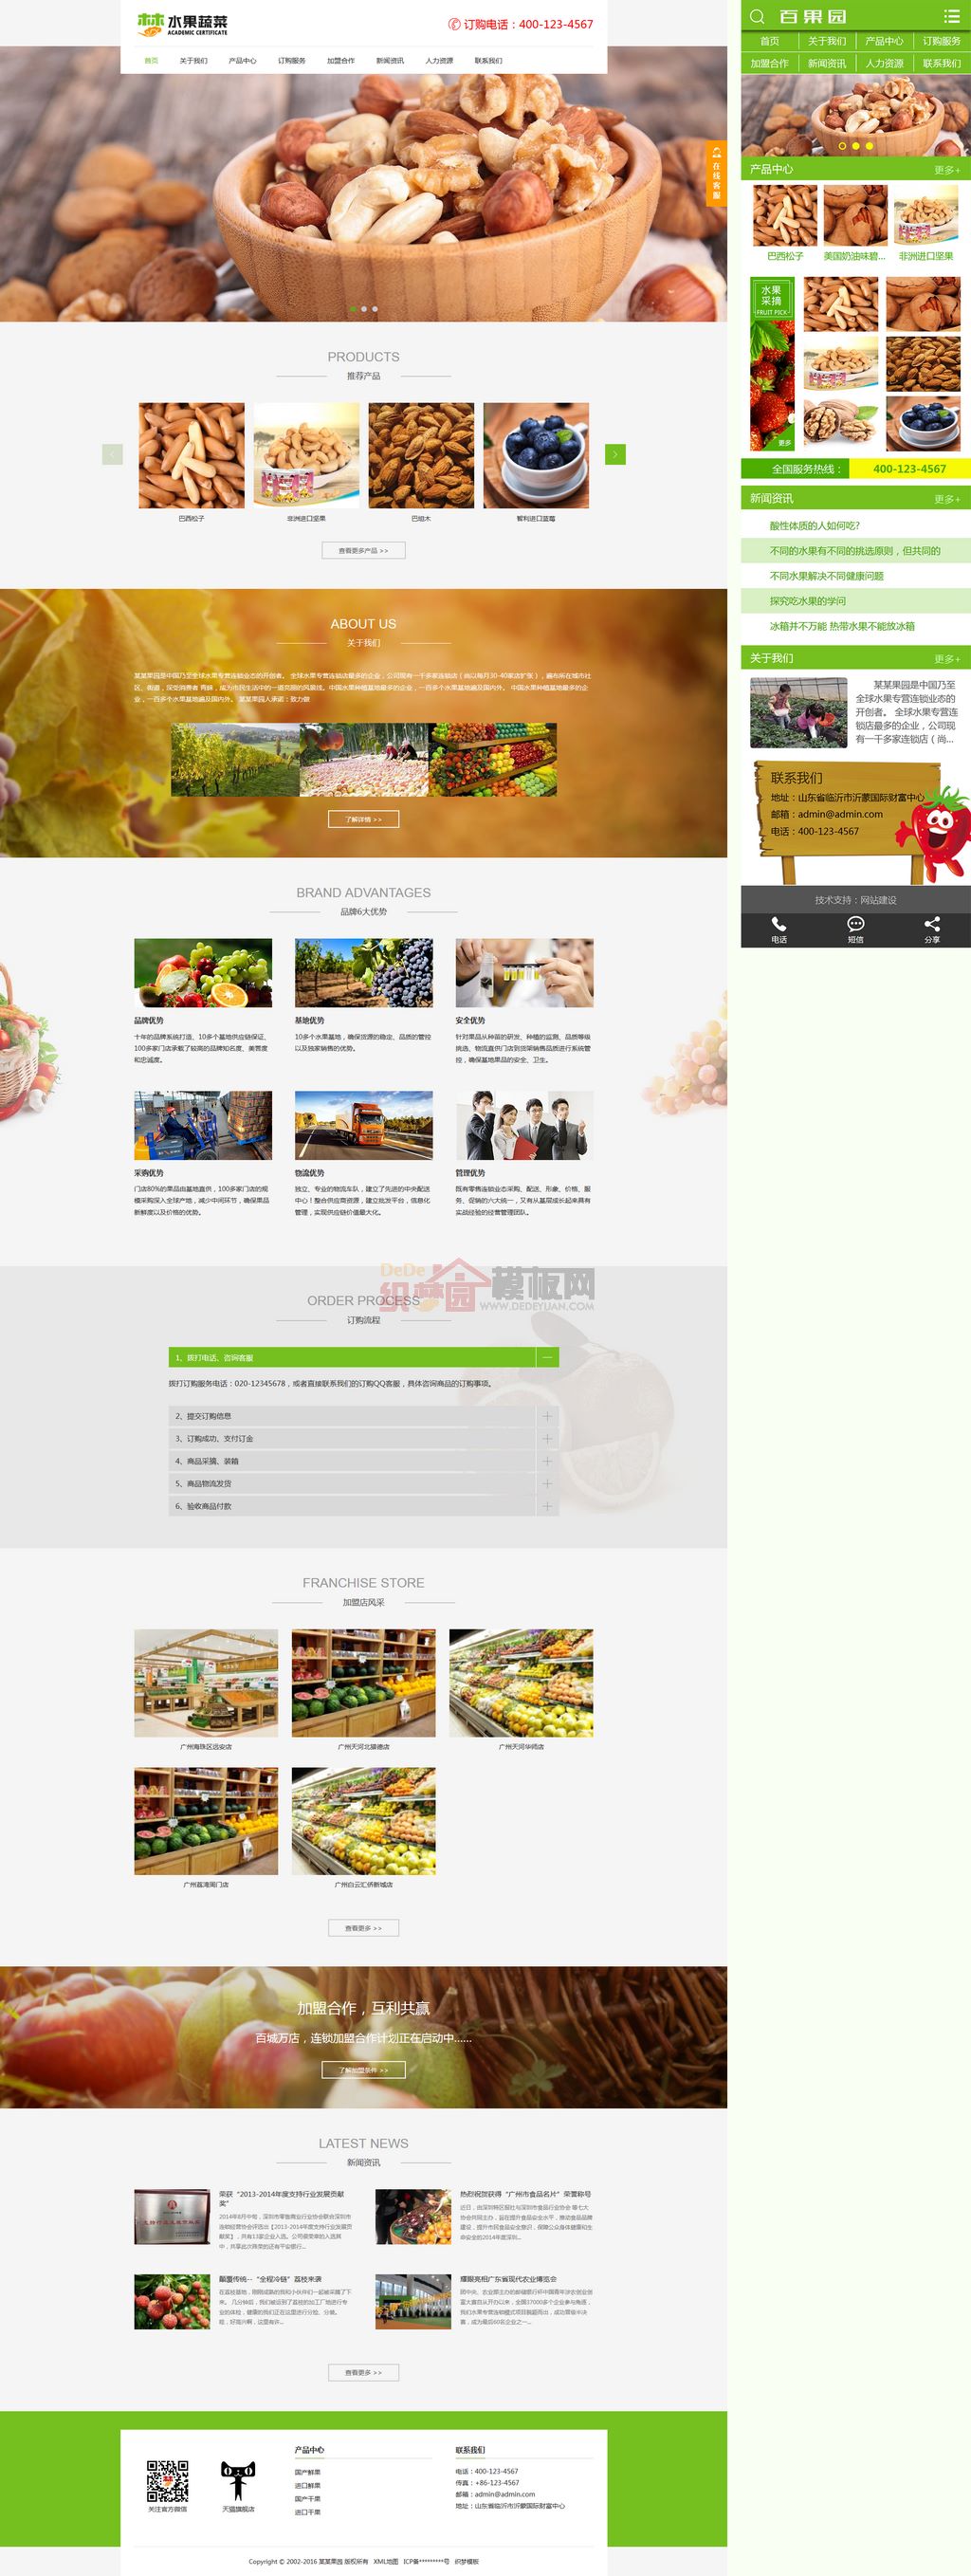 果园水果批发农产品水果基地种植网站WordPress模板下载演示图